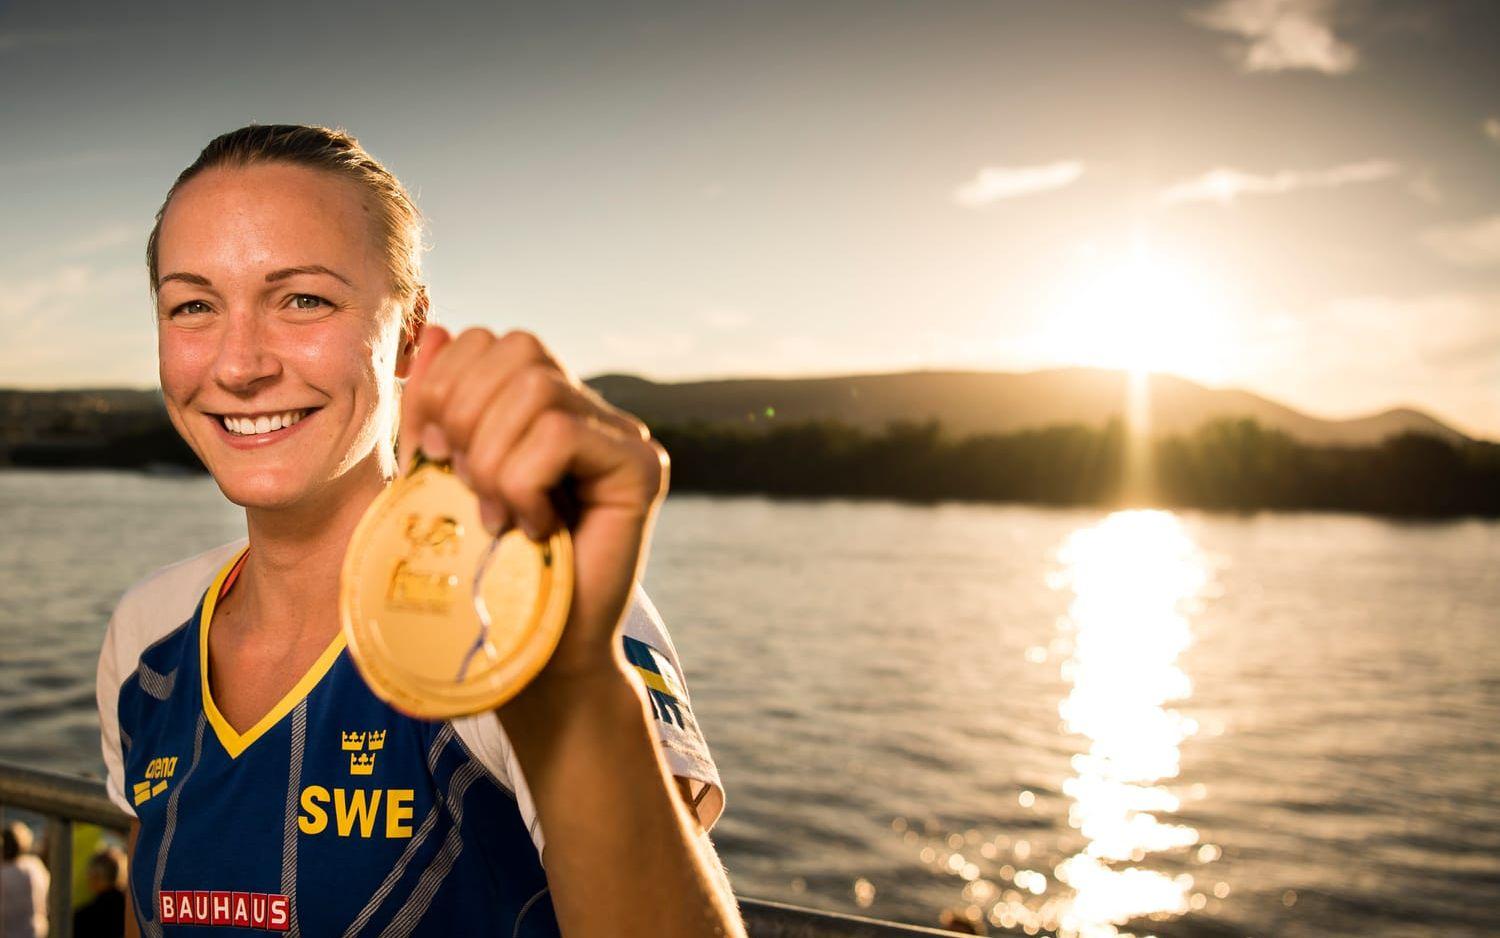 Hon totaldominerade i VM i Budapest och efter tre guld, ett silver och två världsrekord utsågs till mästerskapets bästa kvinnliga simmare. Gulden och världsrekorden gav henne ungefär 1,1 miljoner kronor i prispengar. Pengar hon håller hårt i. Bild: Bildbyrån